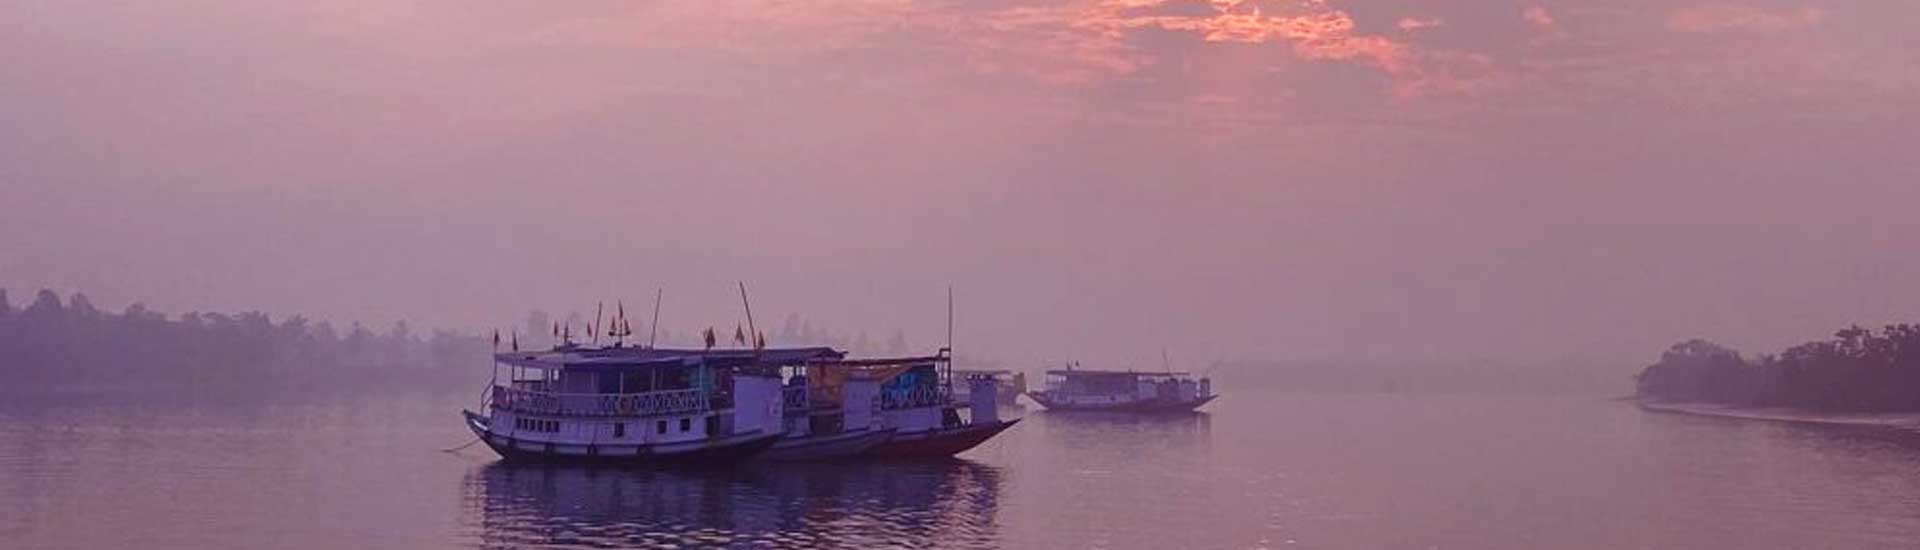 Happy Sundarban tour in Pohela Boishakh 2021